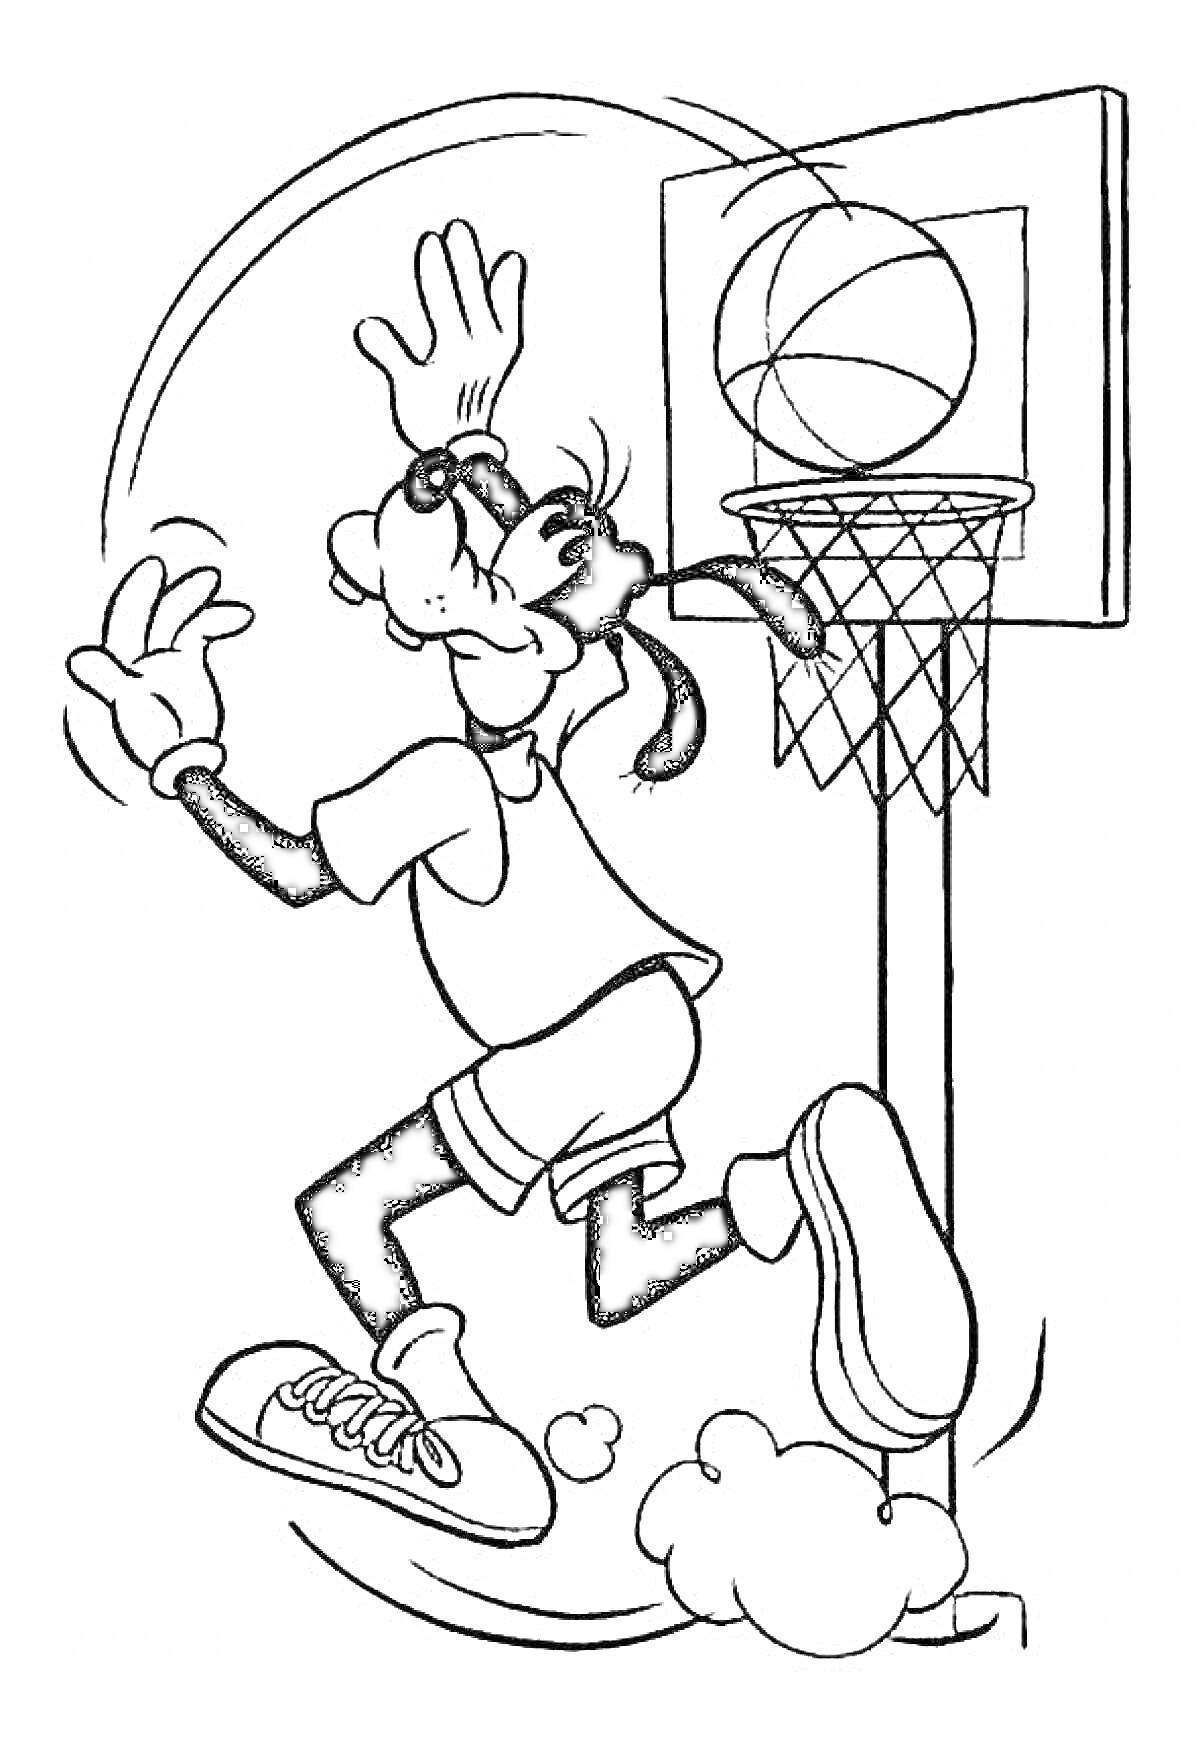 Раскраска Персонаж забрасывает мяч в корзину, баскетбольное кольцо с сеткой, баскетбольный мяч, спортивная одежда и кроссовки